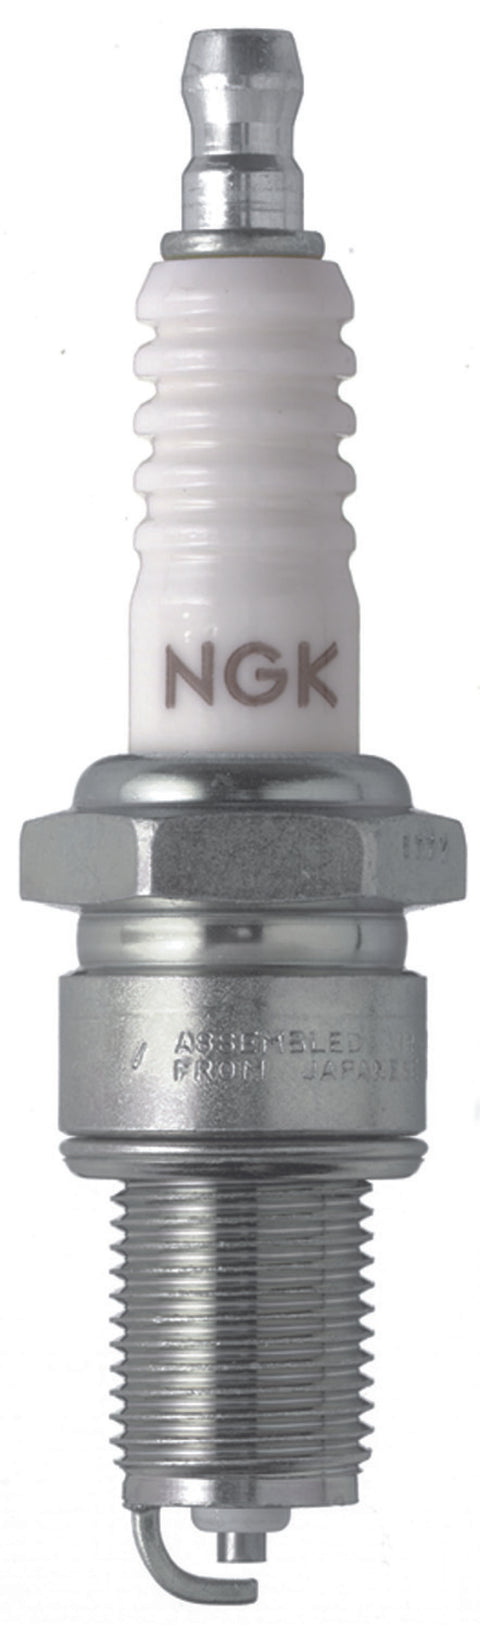 NGK Standard Spark Plug Box of 4 (BP9ES)